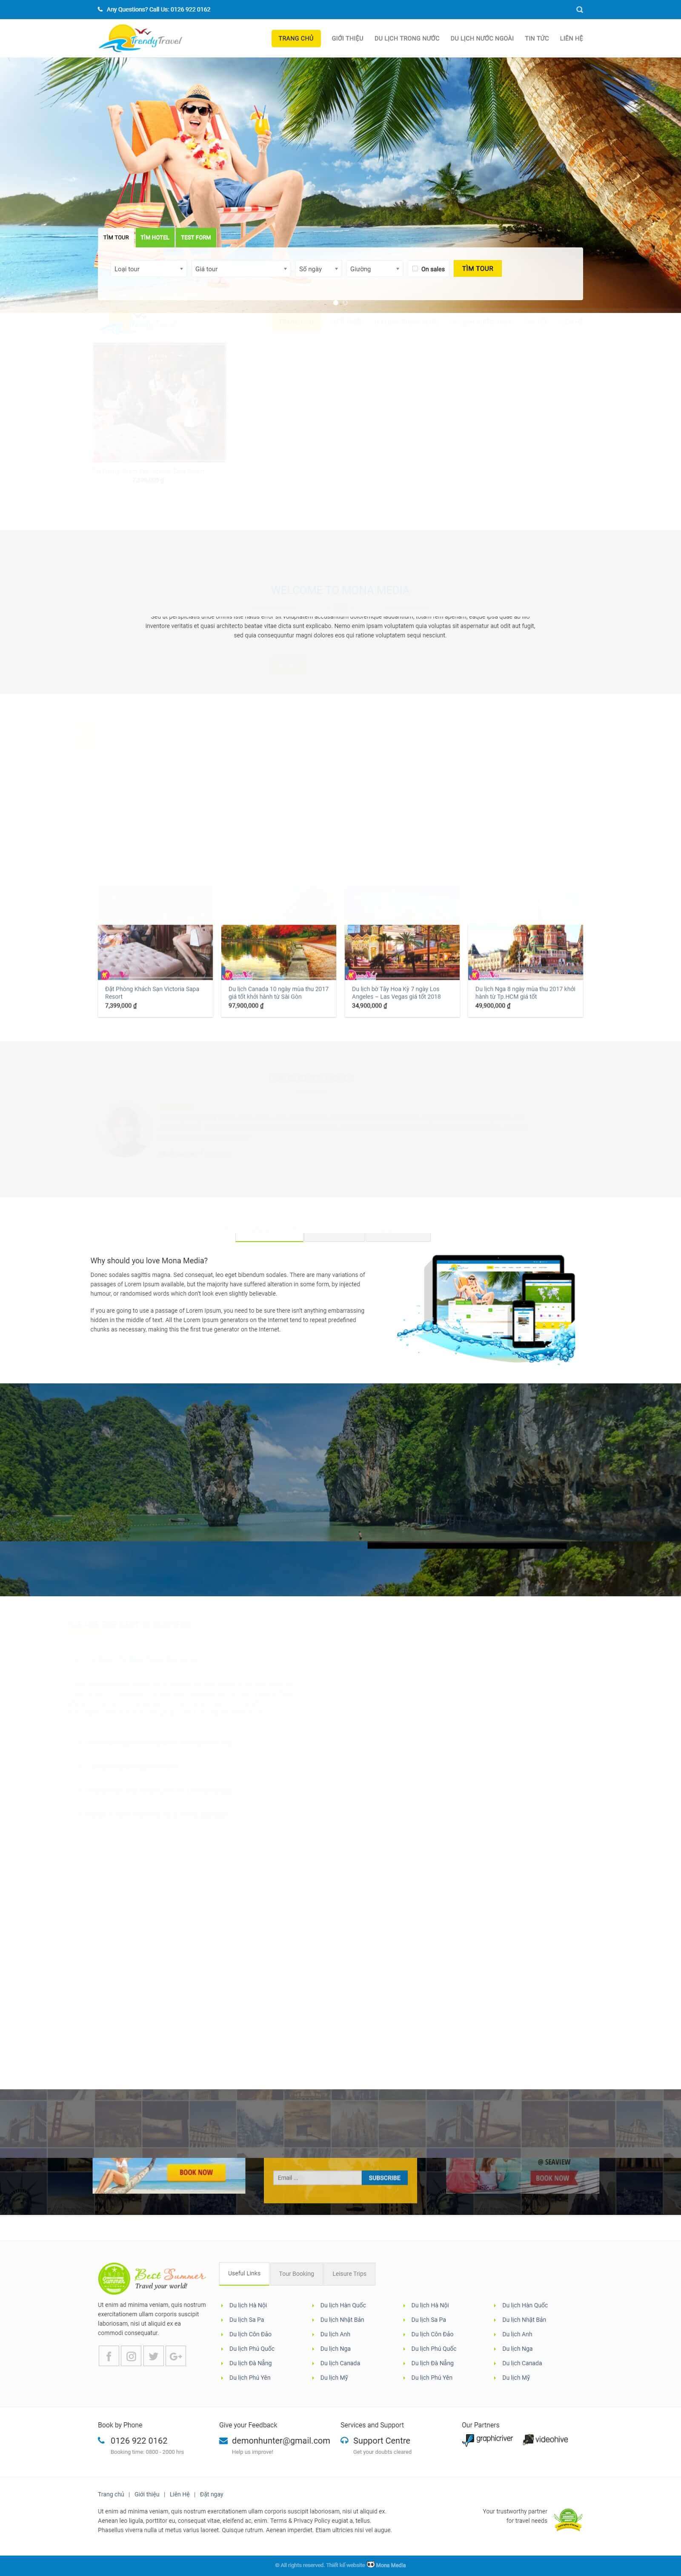 Mẫu website du lịch Trendy Travel đẹp, chuyên nghiệp, chuẩn seo